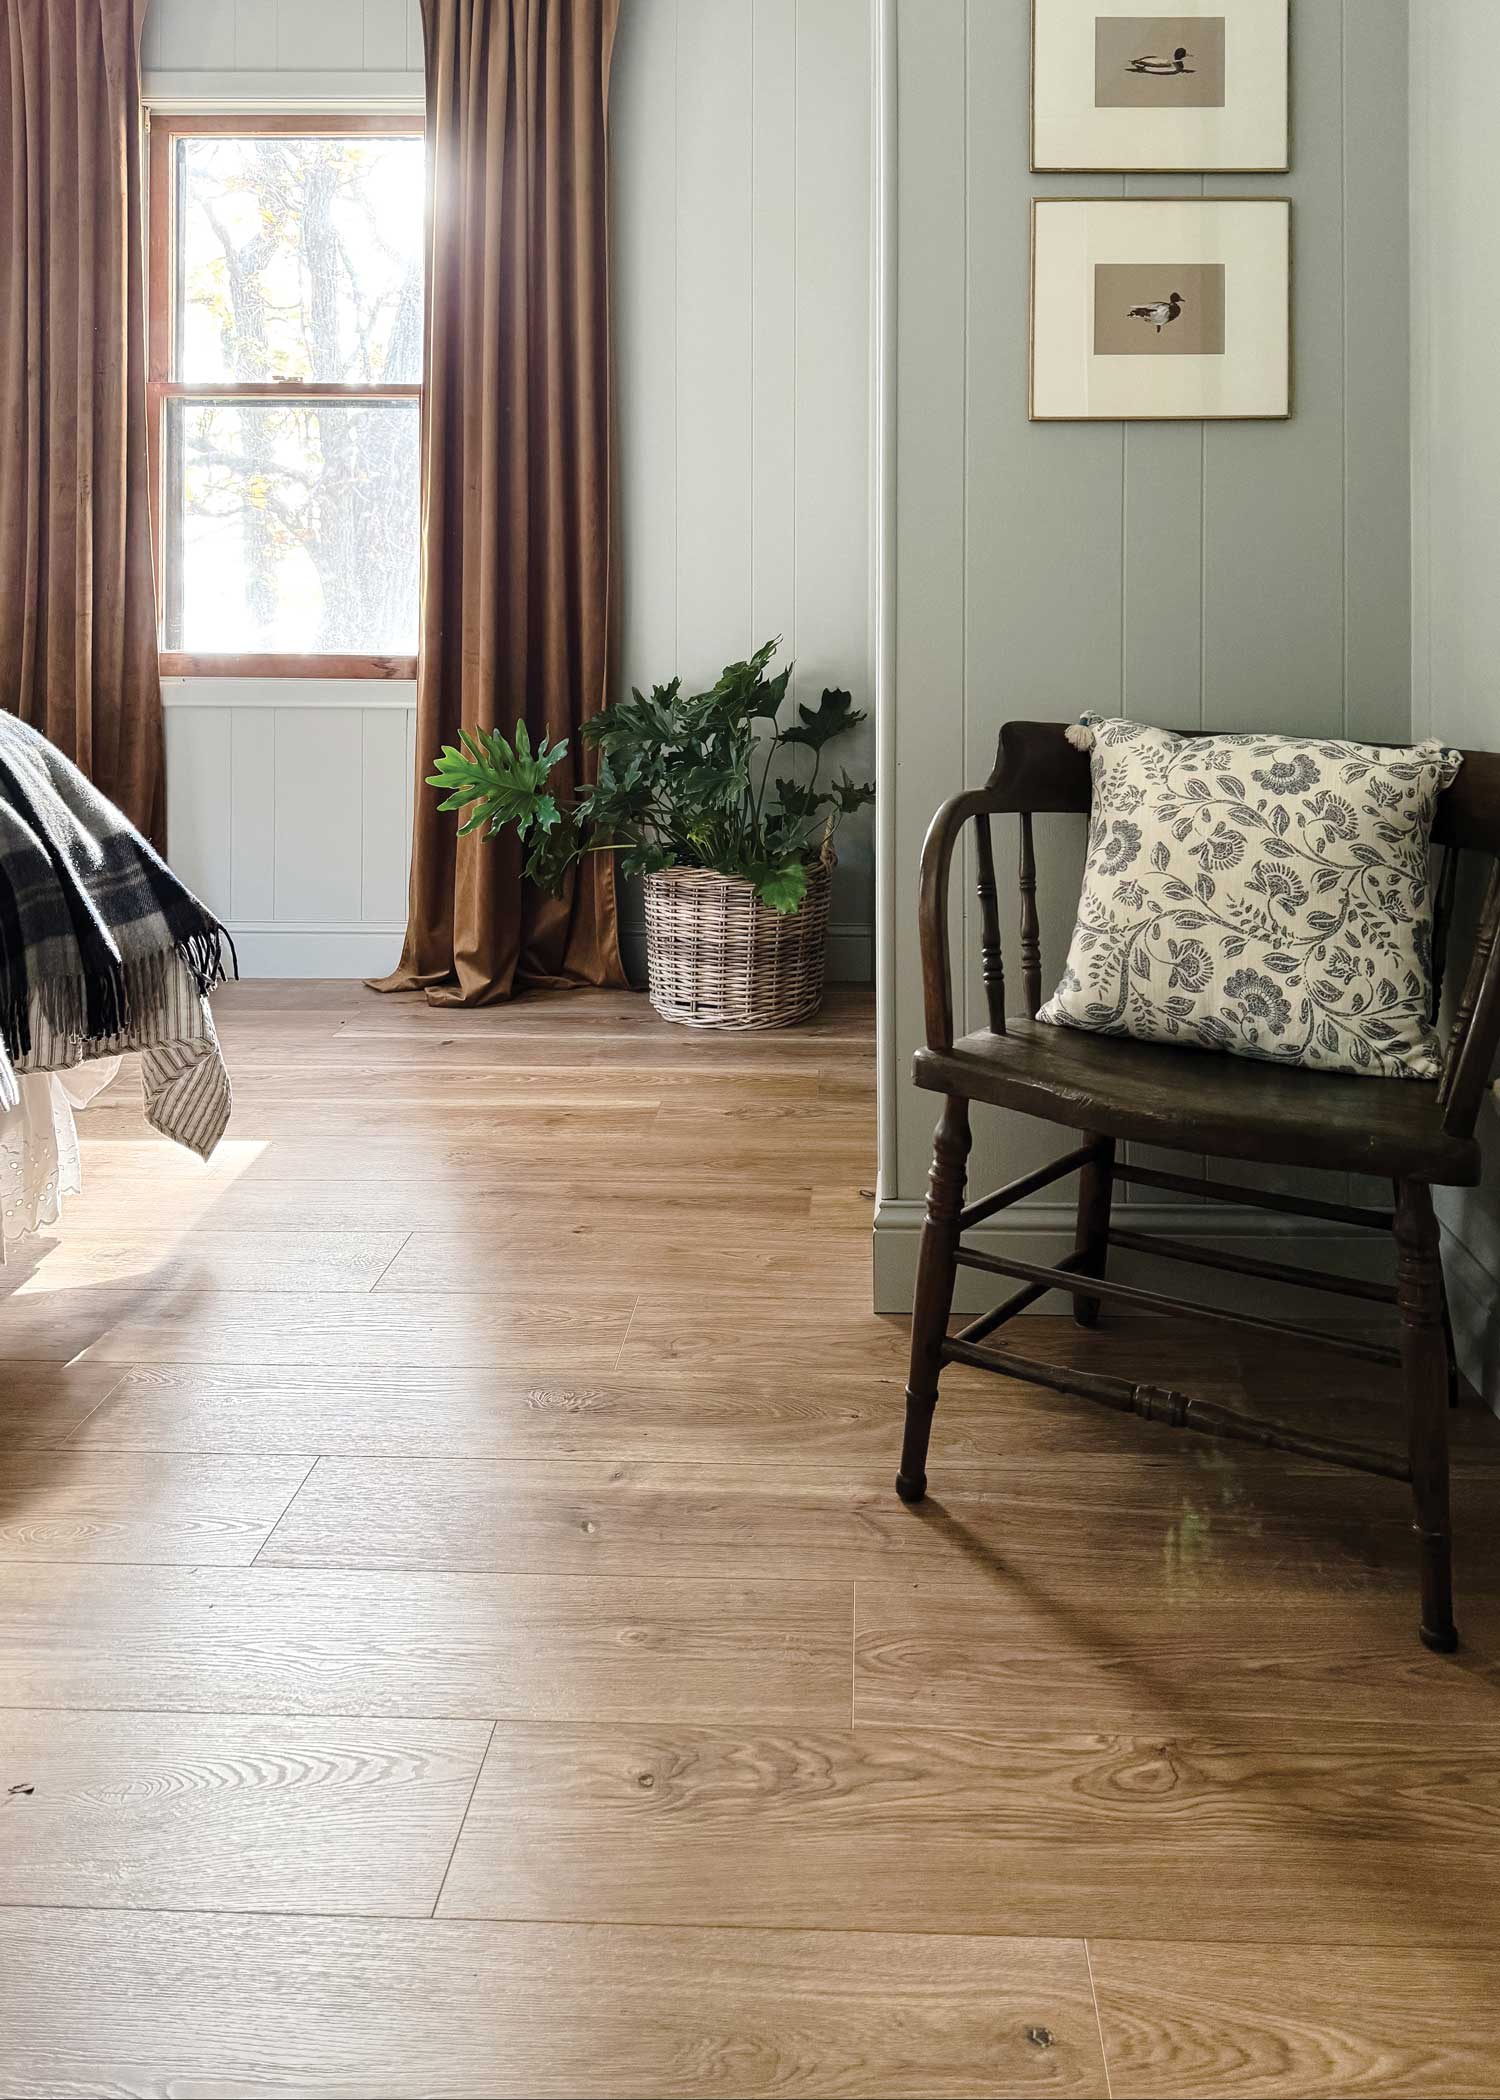 duravana bay bridge oak waterproof hybrid resilient flooring in bedroom with dark brown spindle chair and brown curtains plus plaid bedding